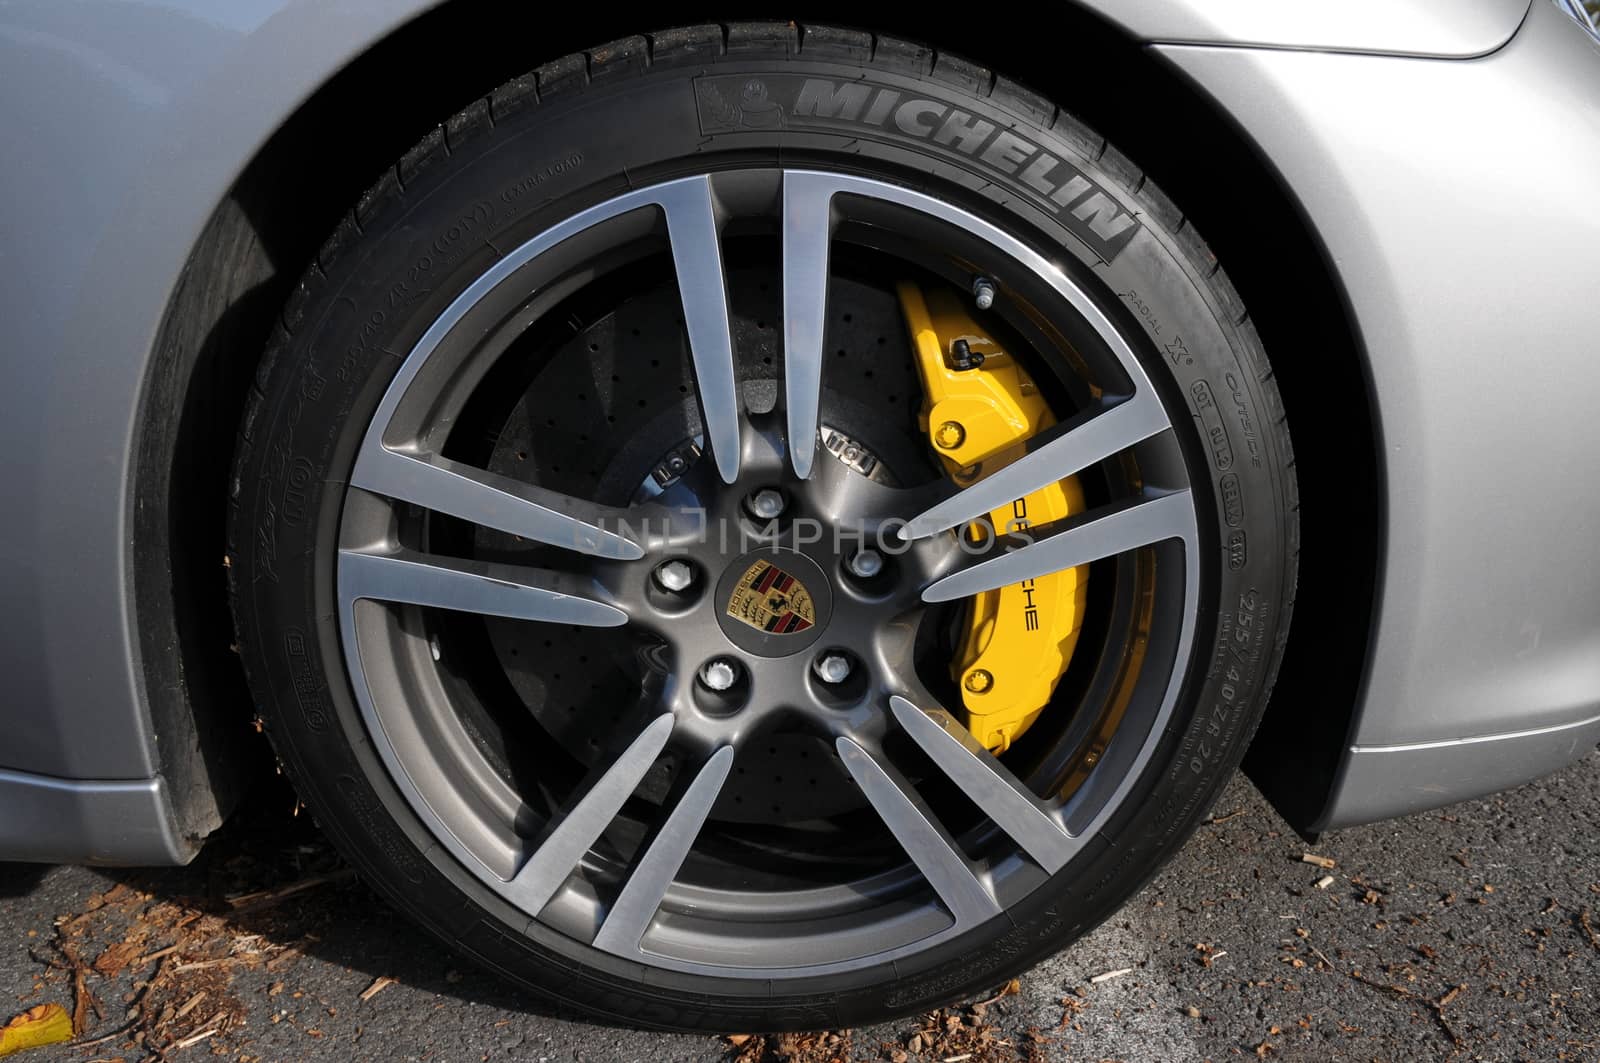 Porsche Panamera GT silver - right tyre - Turbo Sport Crono - 2010 model - PCCB breakes - PDK